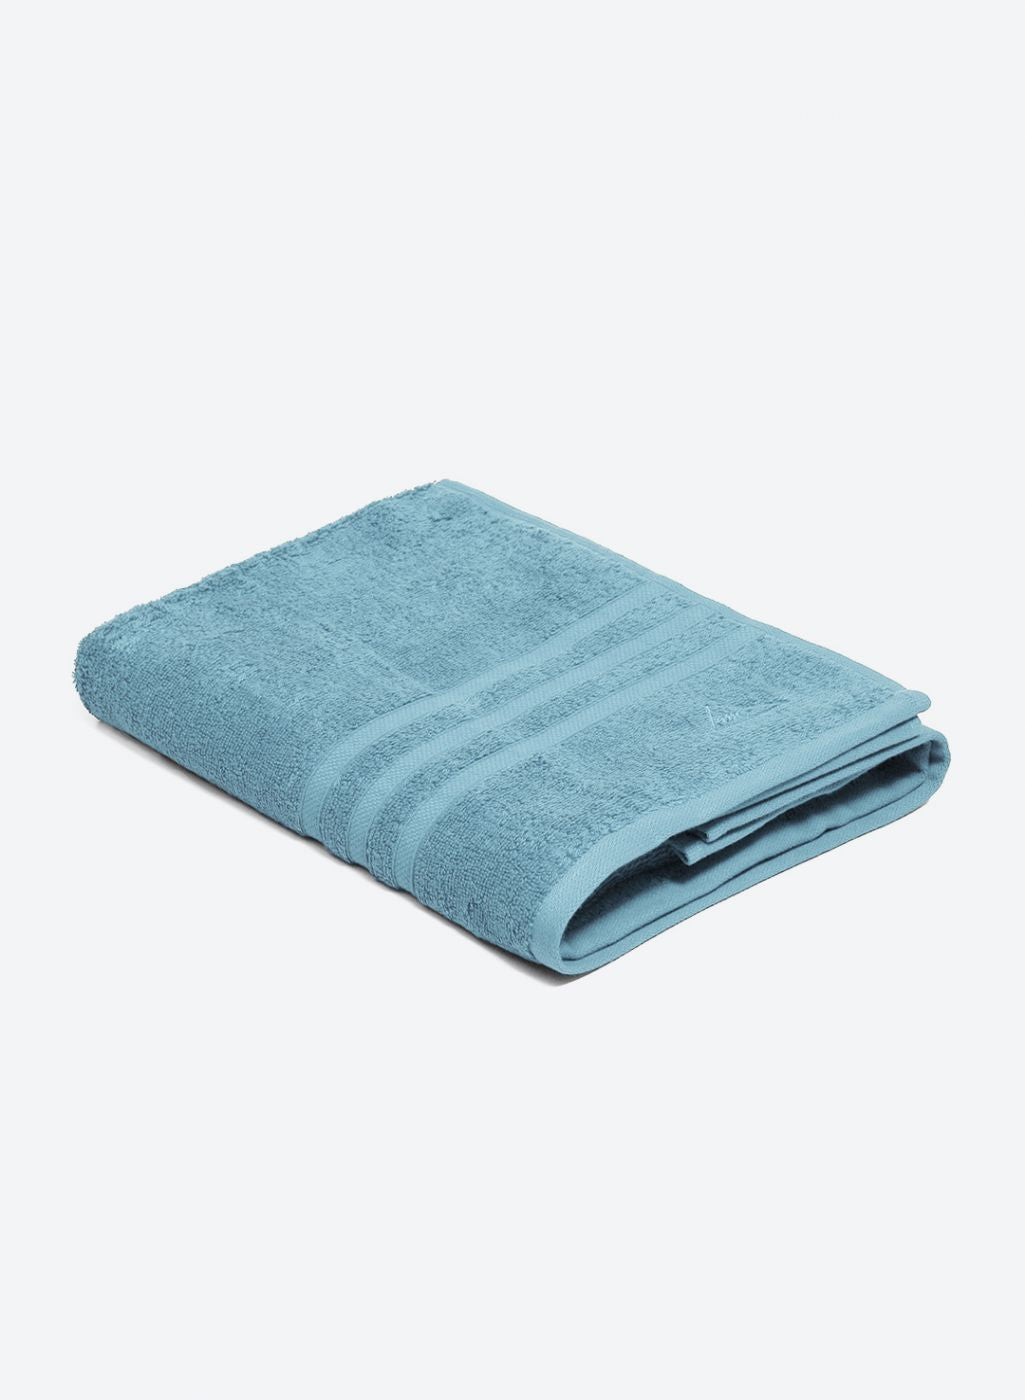 Aqua Blue Cotton 525 GSM Bath Towel